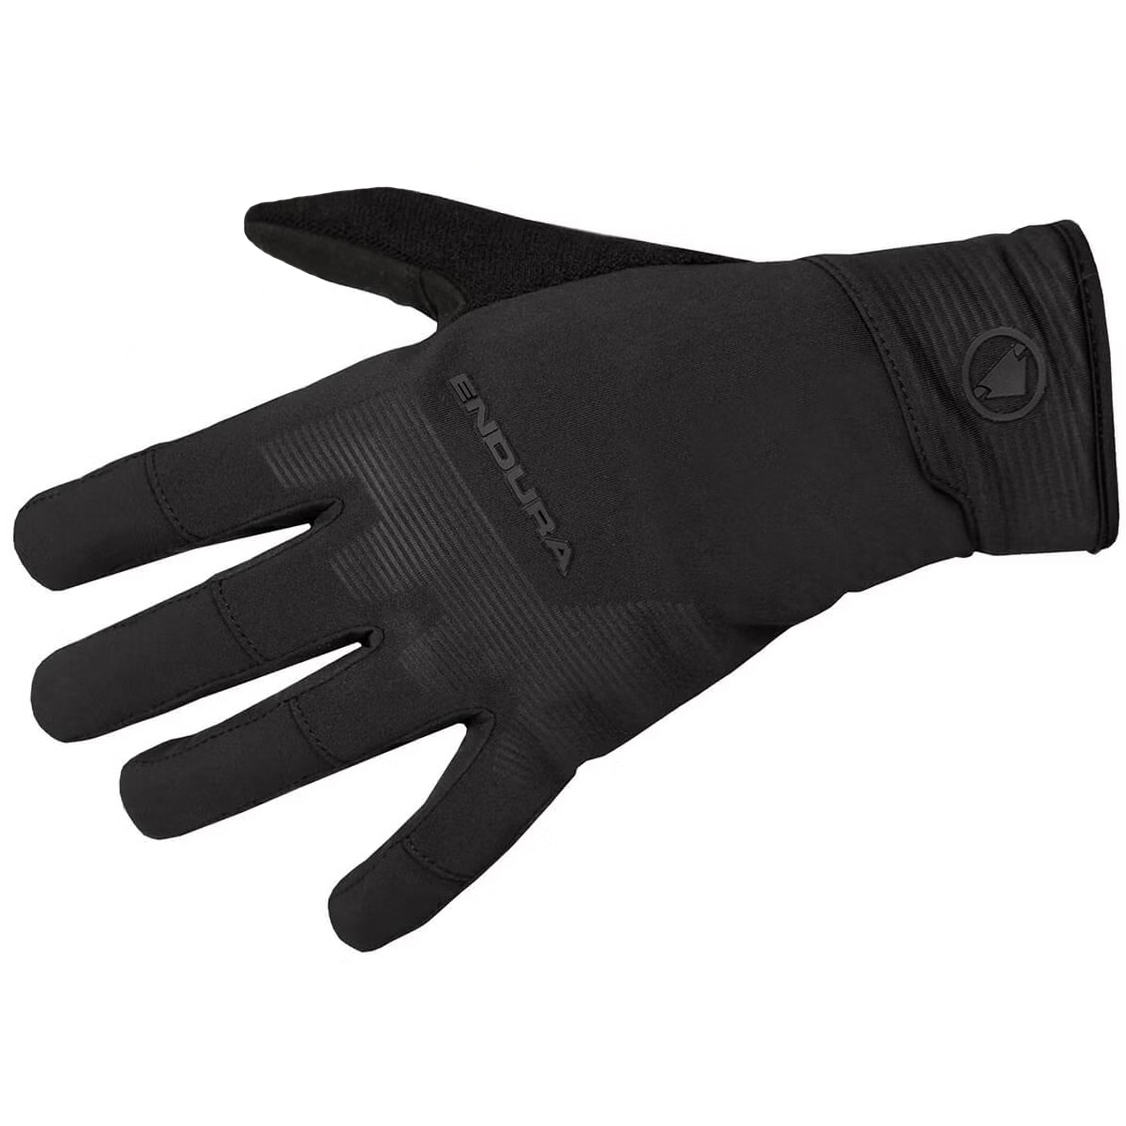 Produktbild von Endura MT500 Freezing Point wasserdichte Handschuhe - schwarz